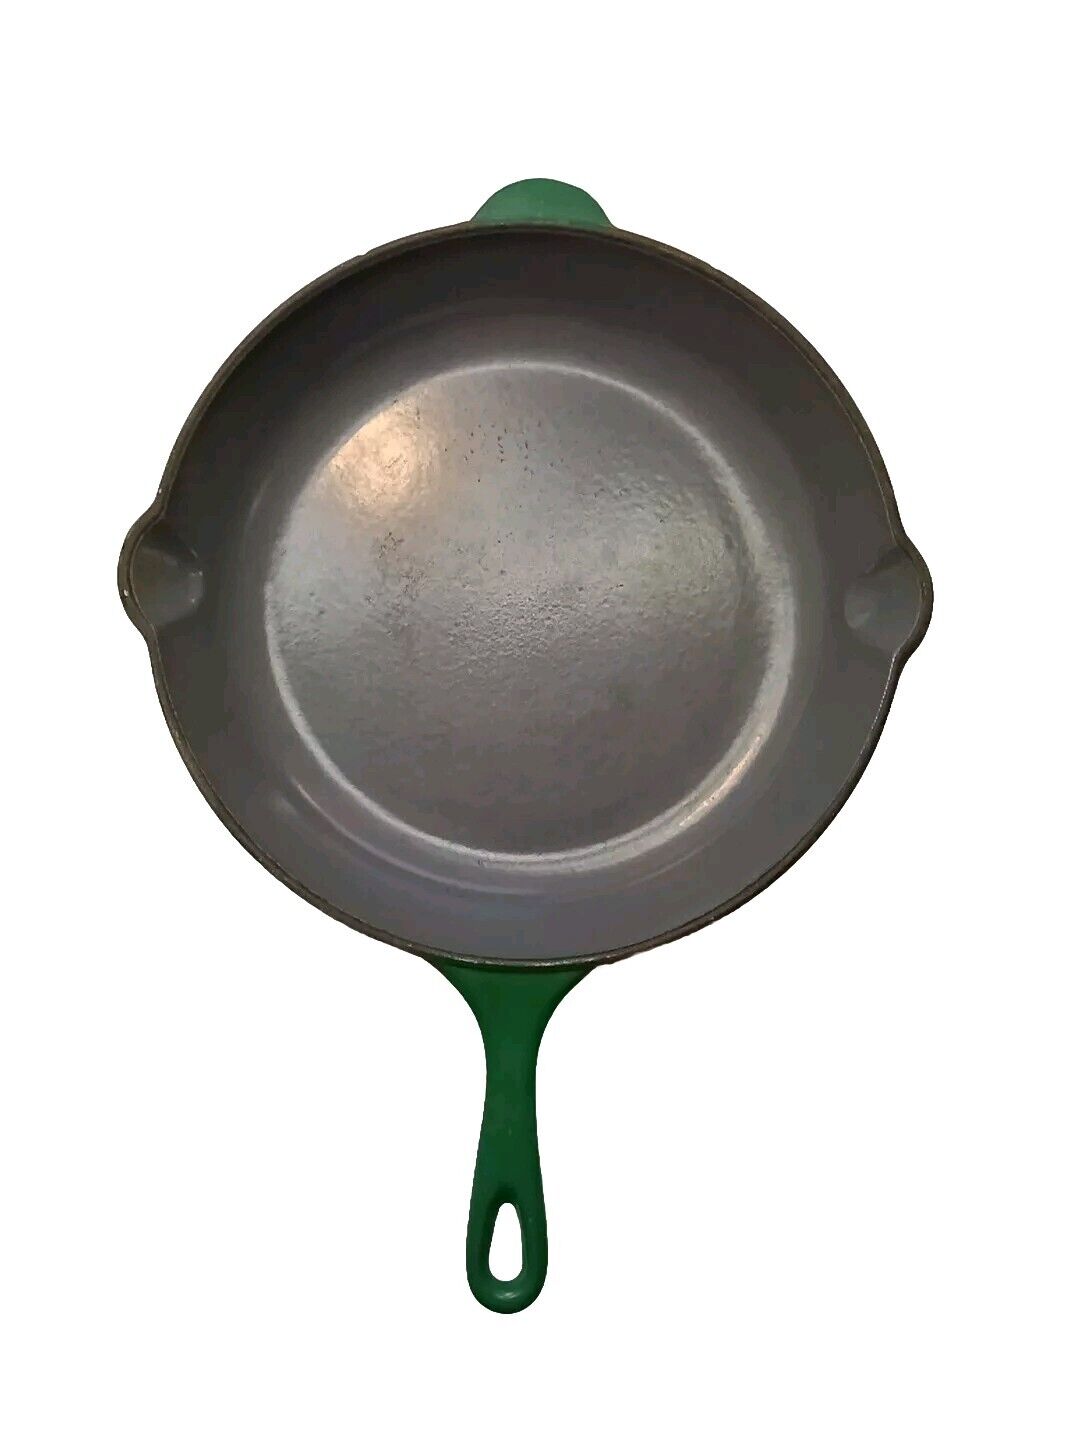 Le Creuset #26 Enamel Cast Iron Skillet Emerald Green Double Spout 10½ Inch